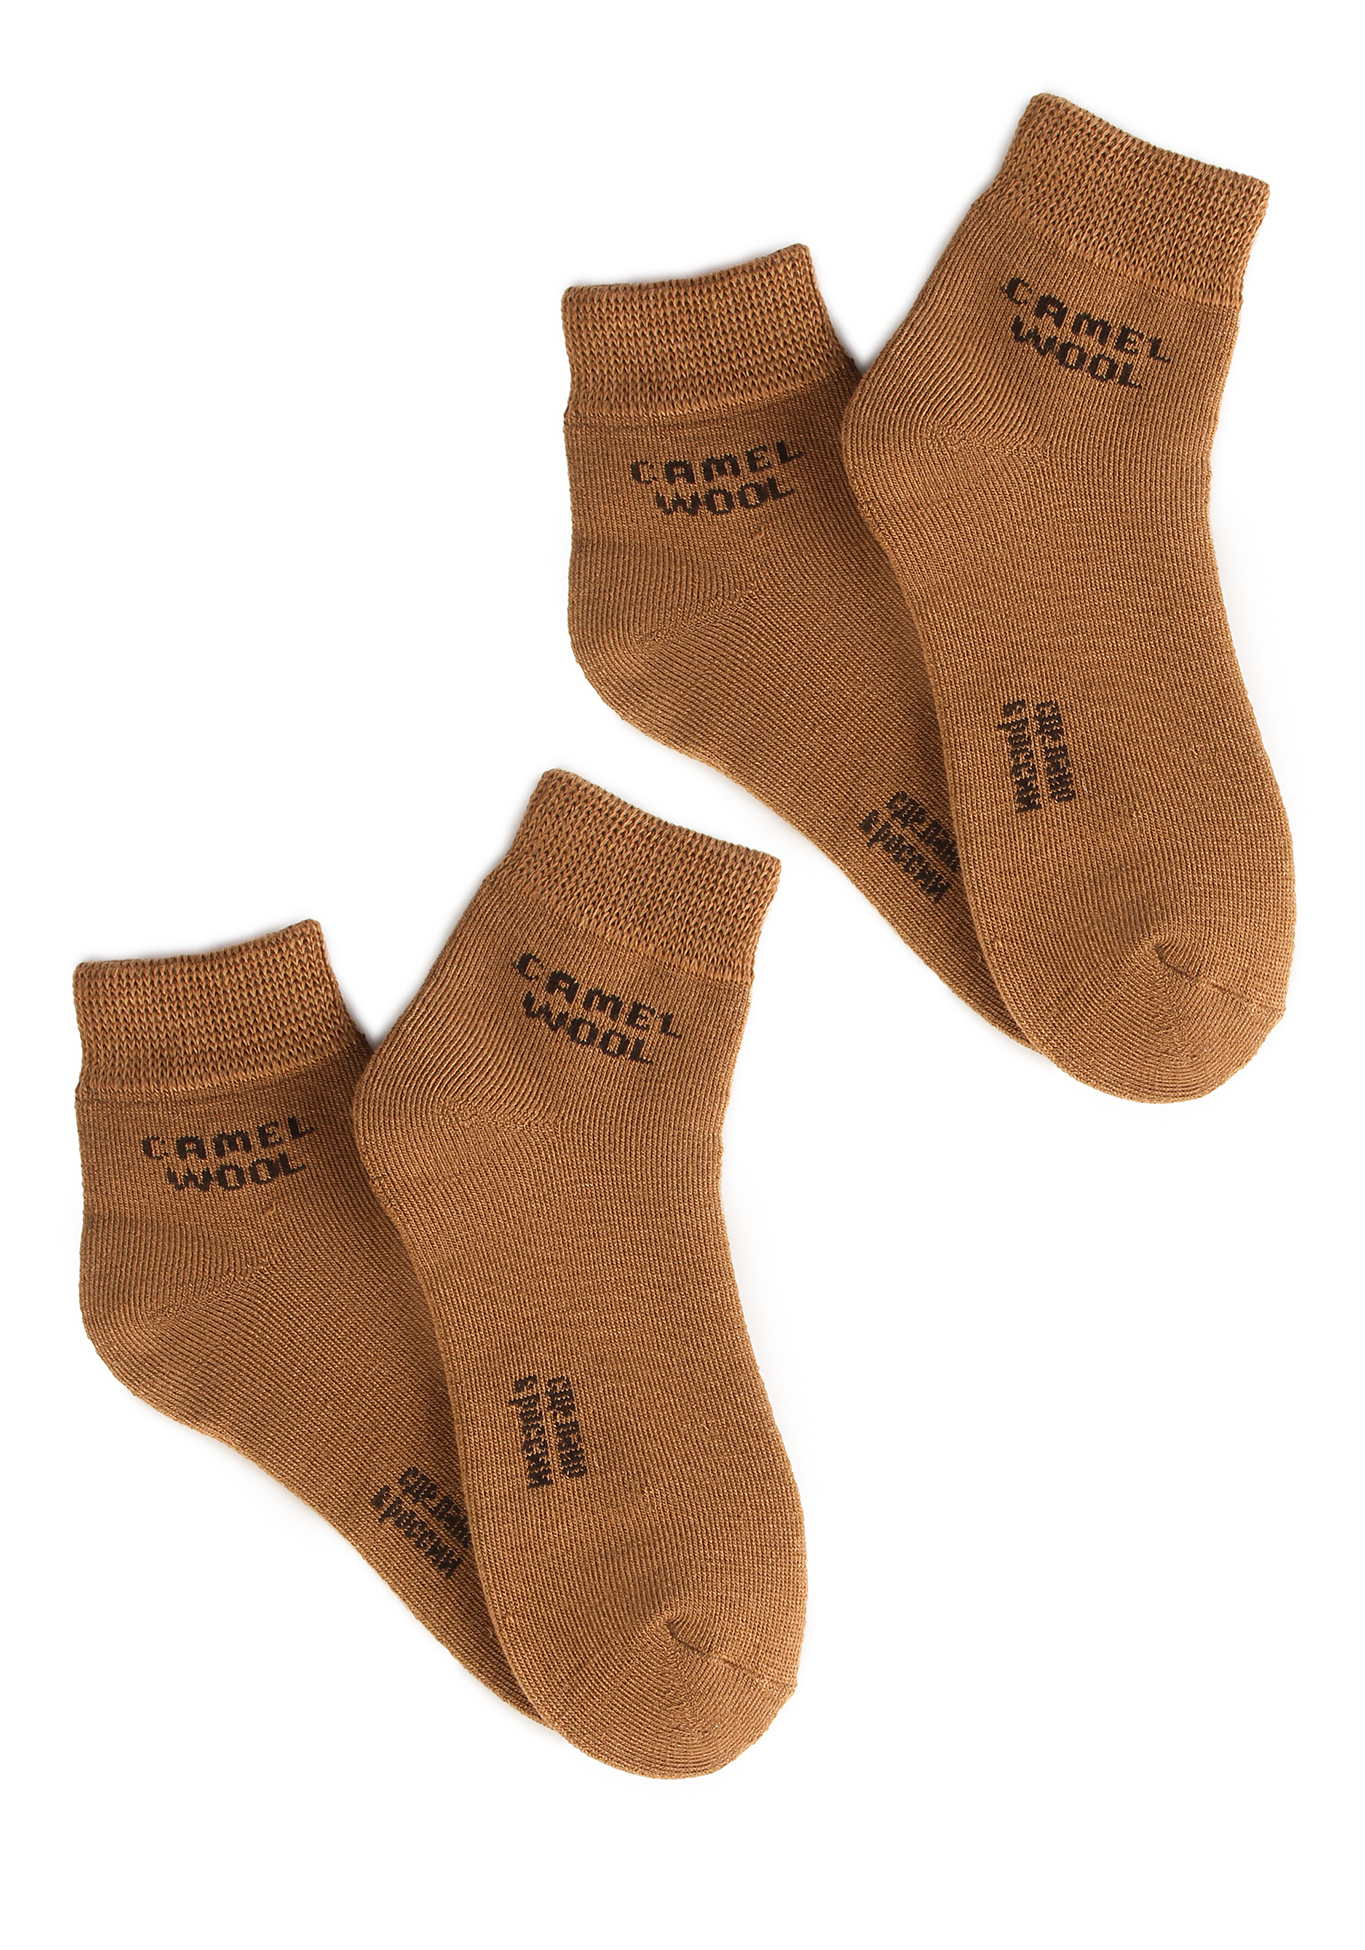 Носки махровые из верблюжьей шерсти, 2 шт. Doctor ТМ, цвет светло-коричневый, размер 42-43